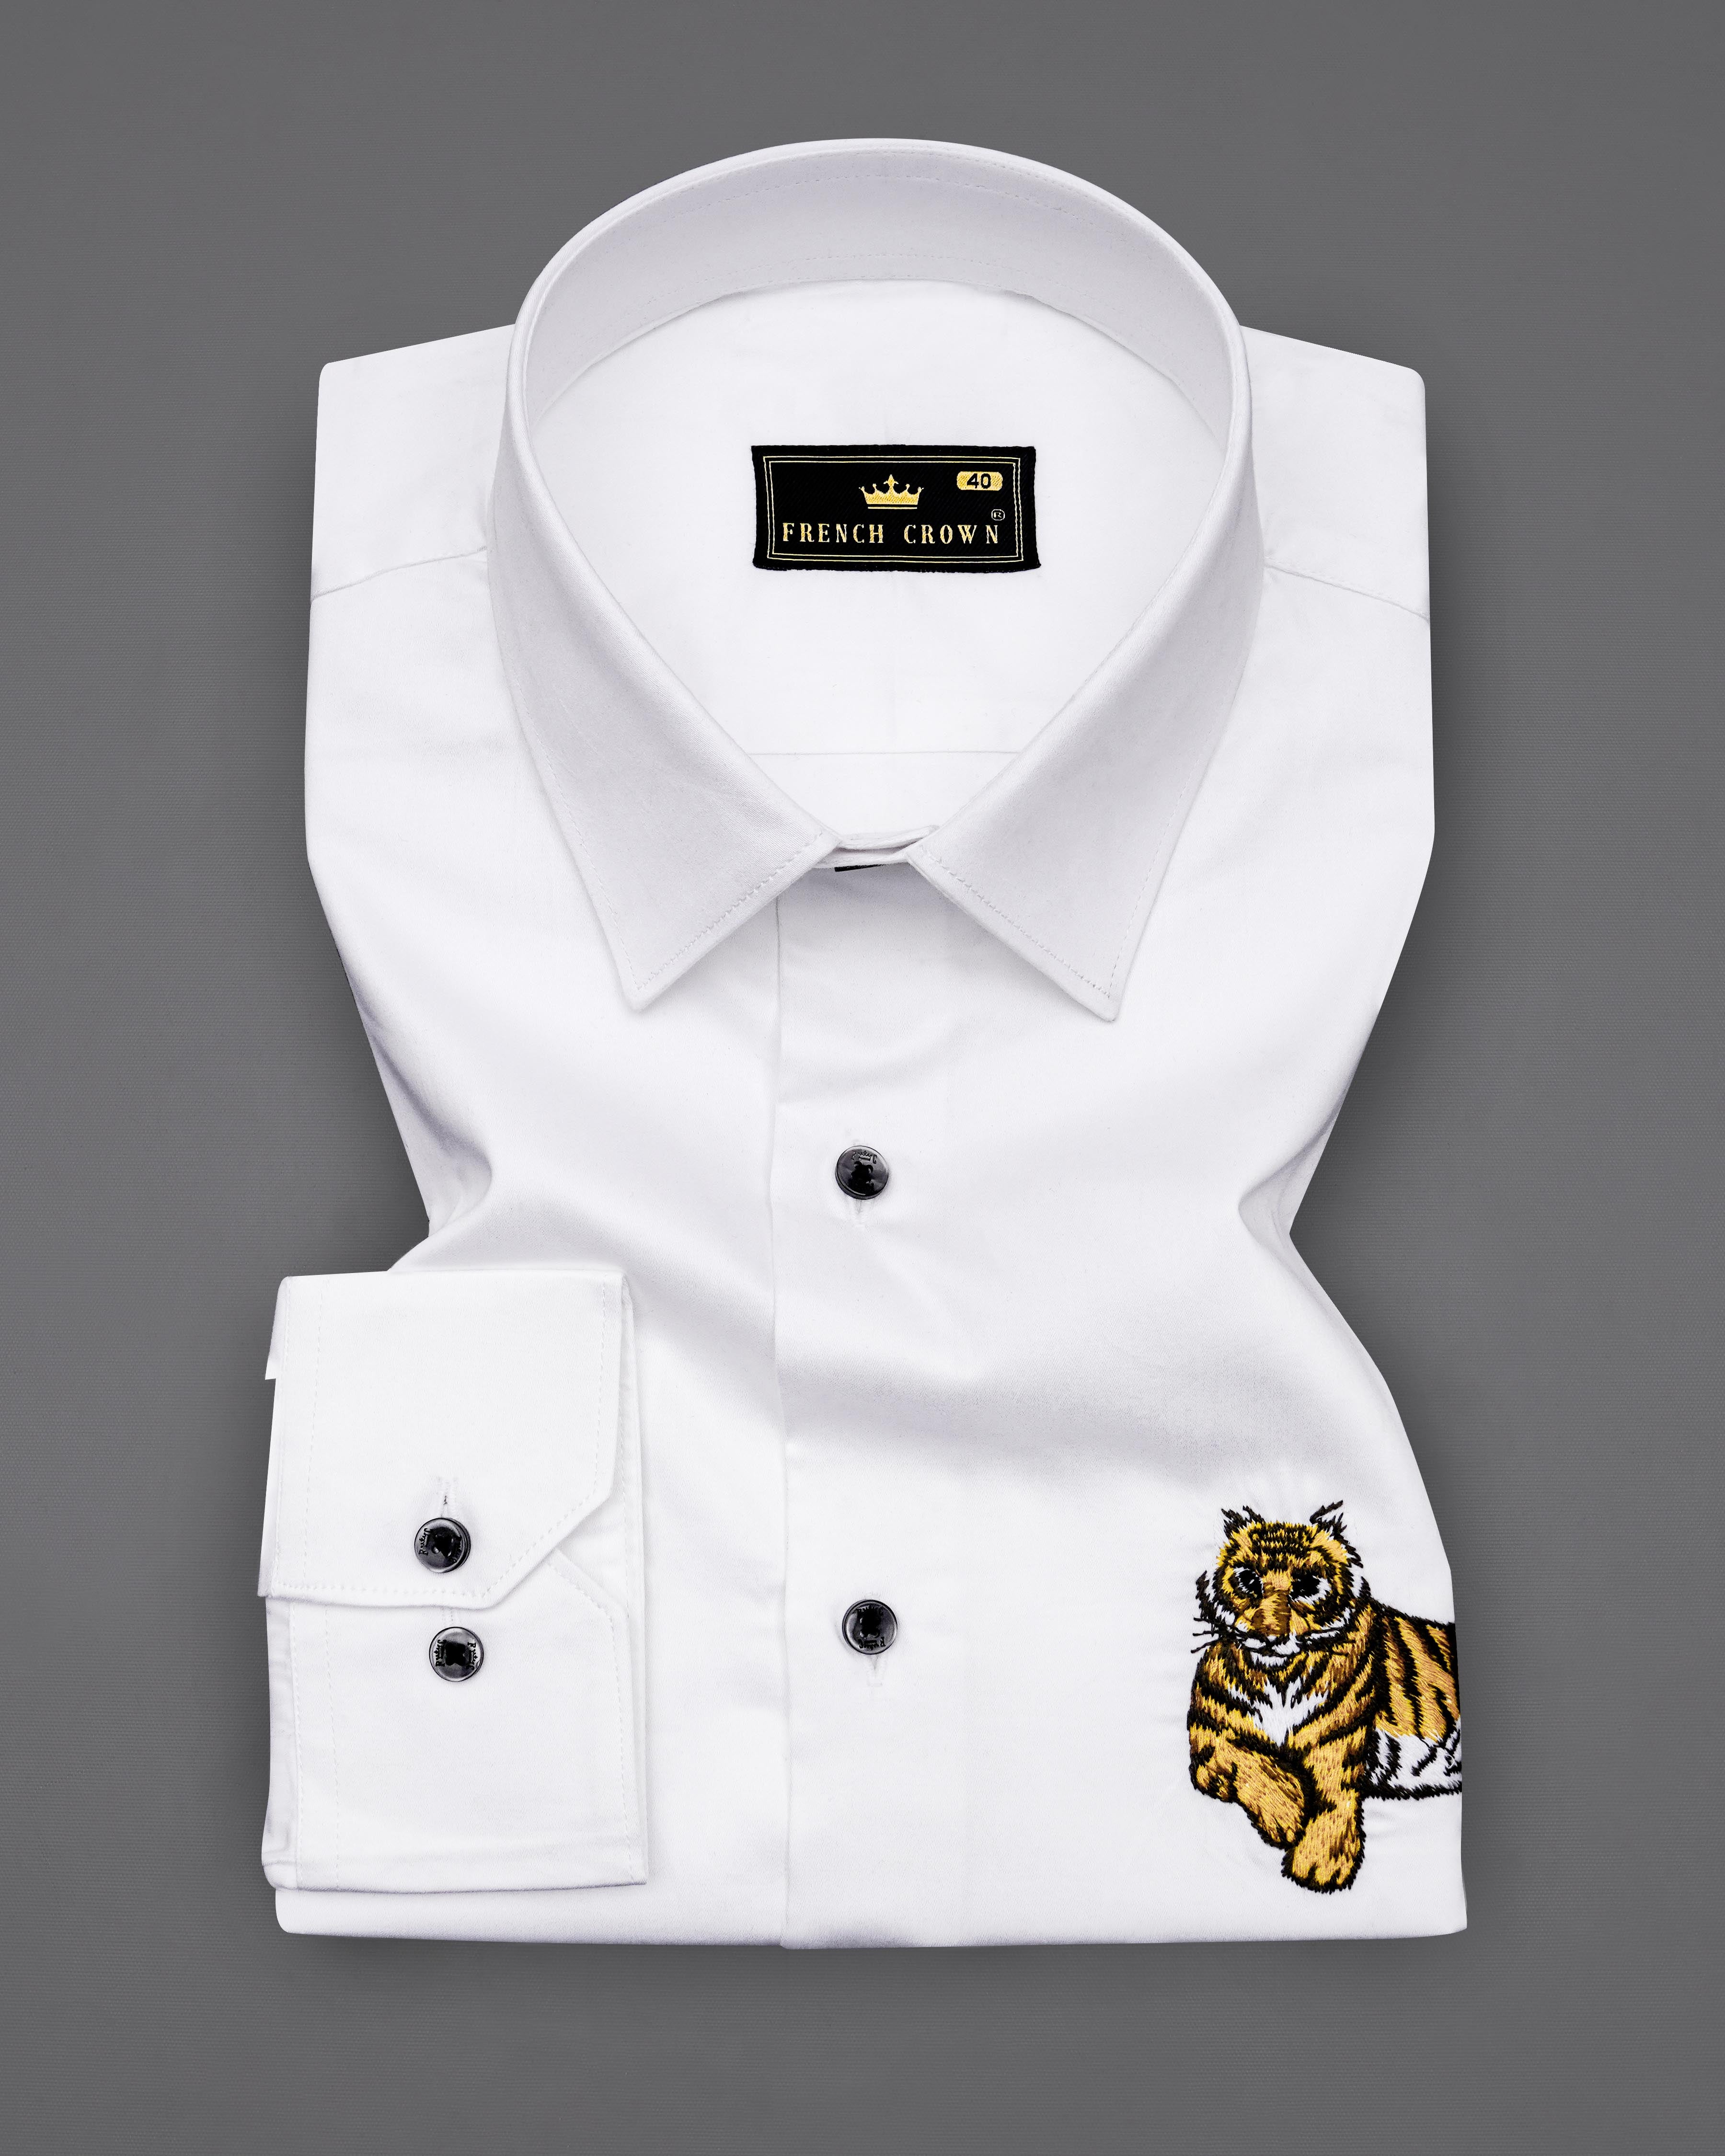 Bright White Subtle Sheen Tiger Cub Embroidered Super Soft Premium Cotton Shirt 8230-BLK-P496-38, 8230-BLK-P496-H-38, 8230-BLK-P496-39, 8230-BLK-P496-H-39, 8230-BLK-P496-40, 8230-BLK-P496-H-40, 8230-BLK-P496-42, 8230-BLK-P496-H-42, 8230-BLK-P496-44, 8230-BLK-P496-H-44, 8230-BLK-P496-46, 8230-BLK-P496-H-46, 8230-BLK-P496-48, 8230-BLK-P496-H-48, 8230-BLK-P496-50, 8230-BLK-P496-H-50, 8230-BLK-P496-52, 8230-BLK-P496-H-52